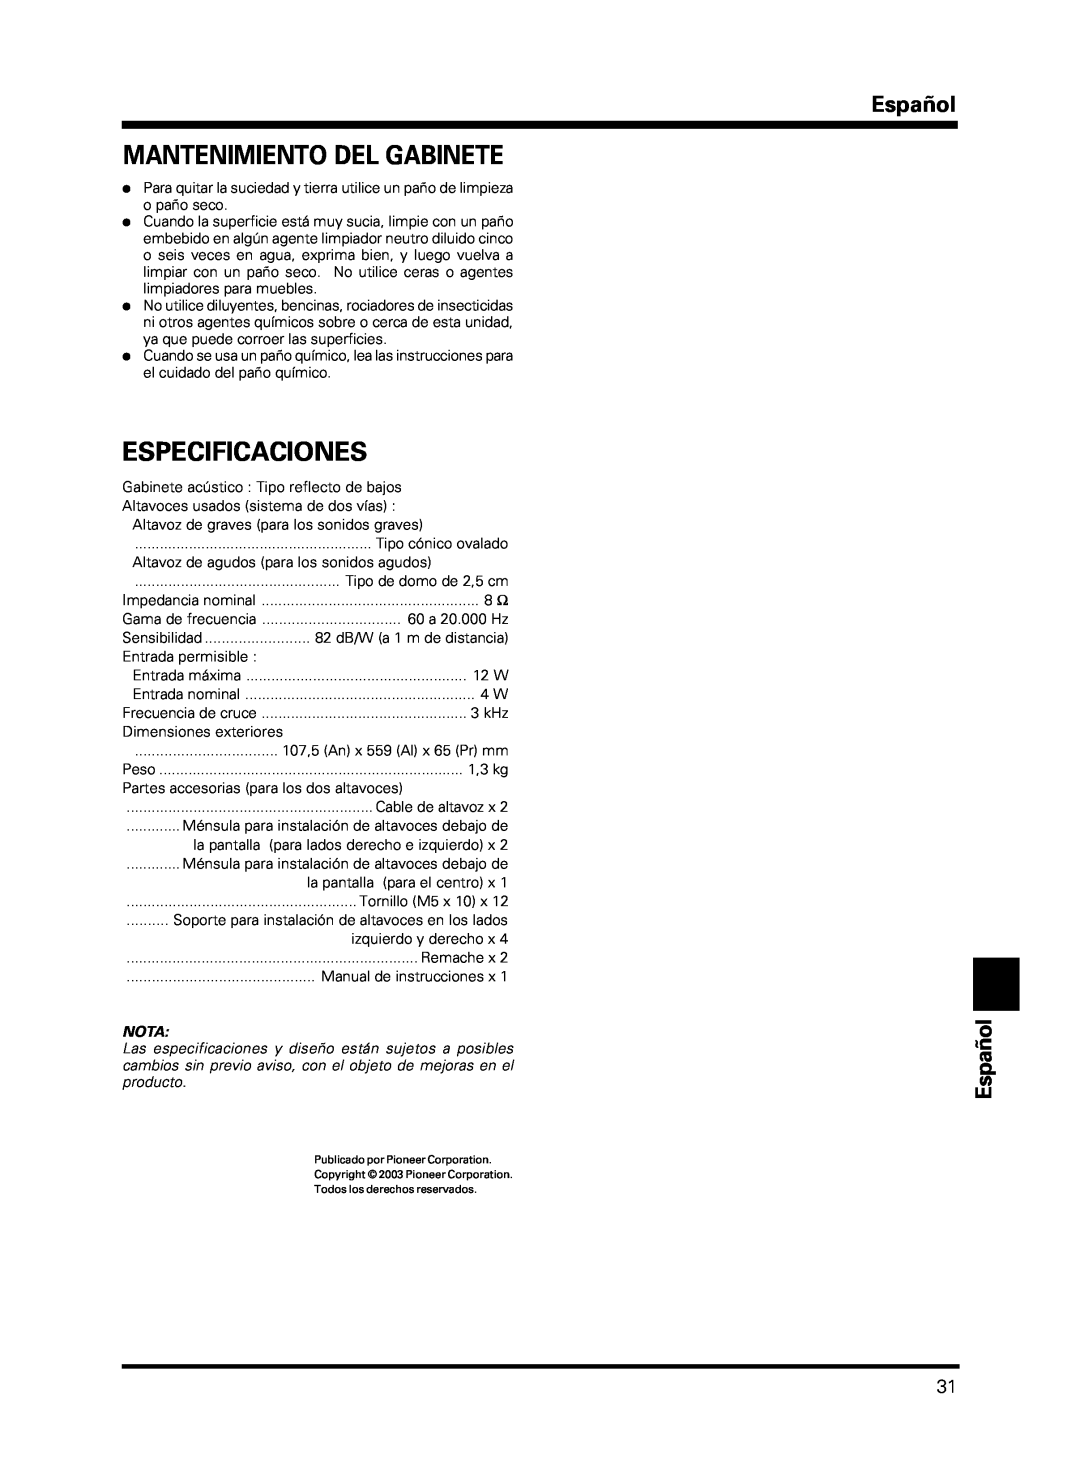 Pioneer PDP-S13-LR manual Mantenimiento Del Gabinete, Especificaciones, Español Español, Nota 